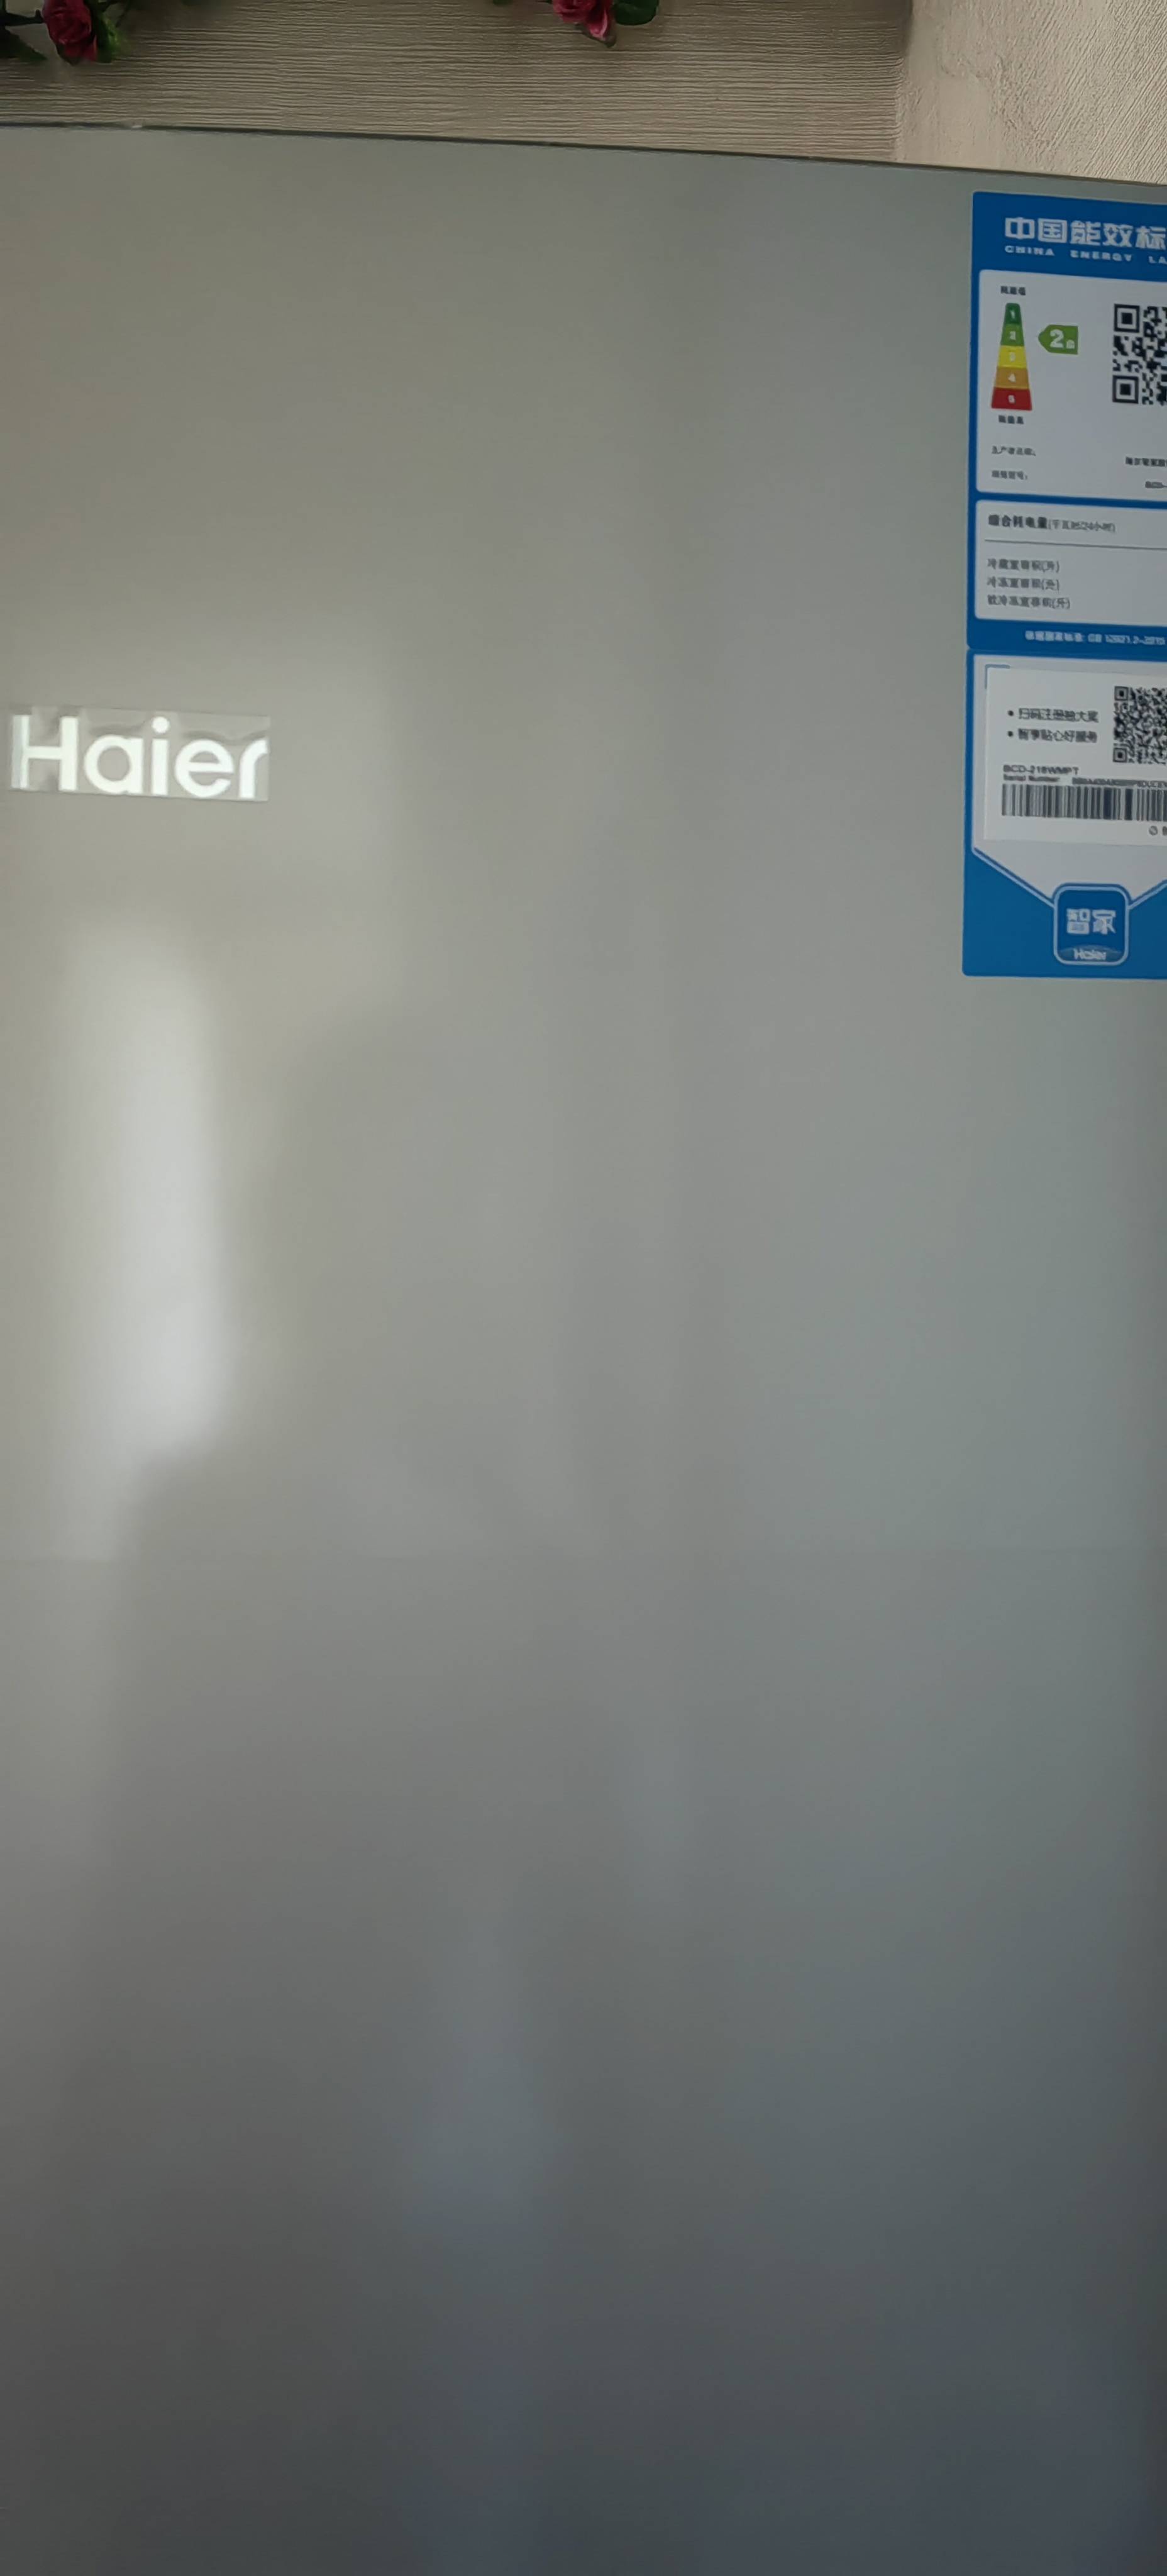 海尔(Haier)216升三门冰箱 风冷无霜 净味保鲜 低温补偿 租房小冰箱 BCD-216WMPT晒单图